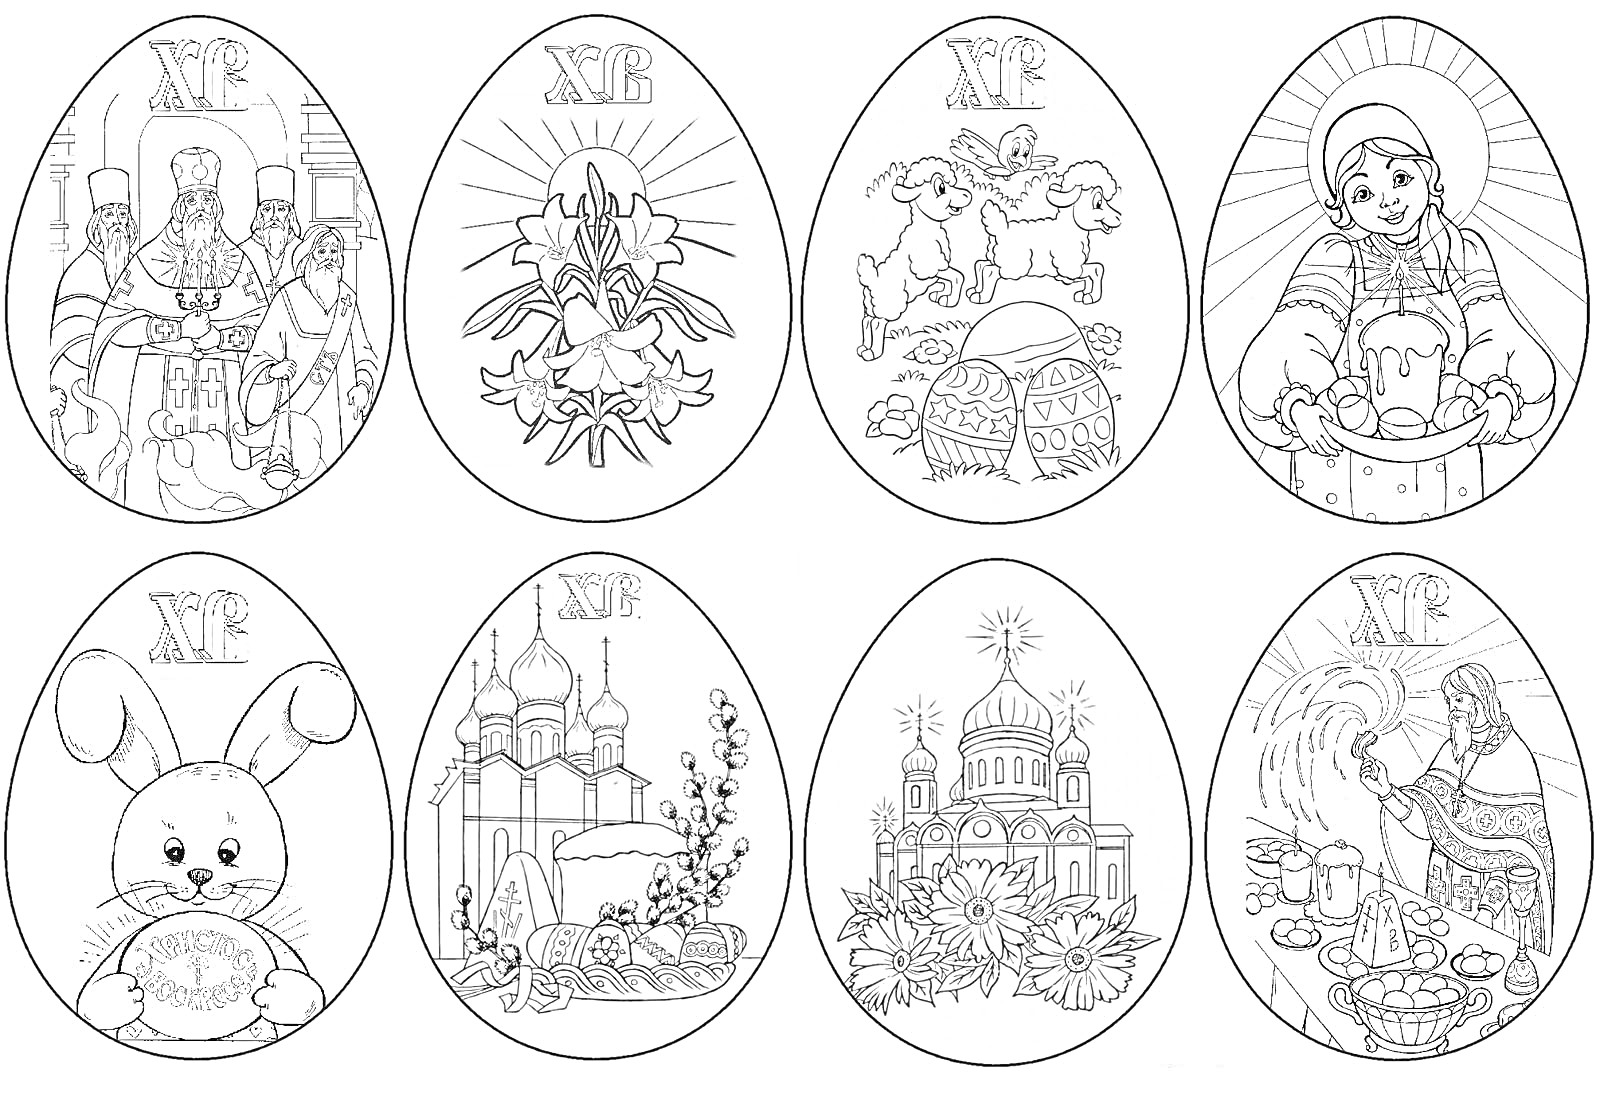 Пасхальные яйца с различными тематическими изображениями: церковный хор с иконами, пасхальные колокола и свечи, ягнята с куличом и яйцами, женщина со свечой и куличом, пасхальный кролик с яйцом, церковь с цветами, собор с пасхальной символикой, женщина го